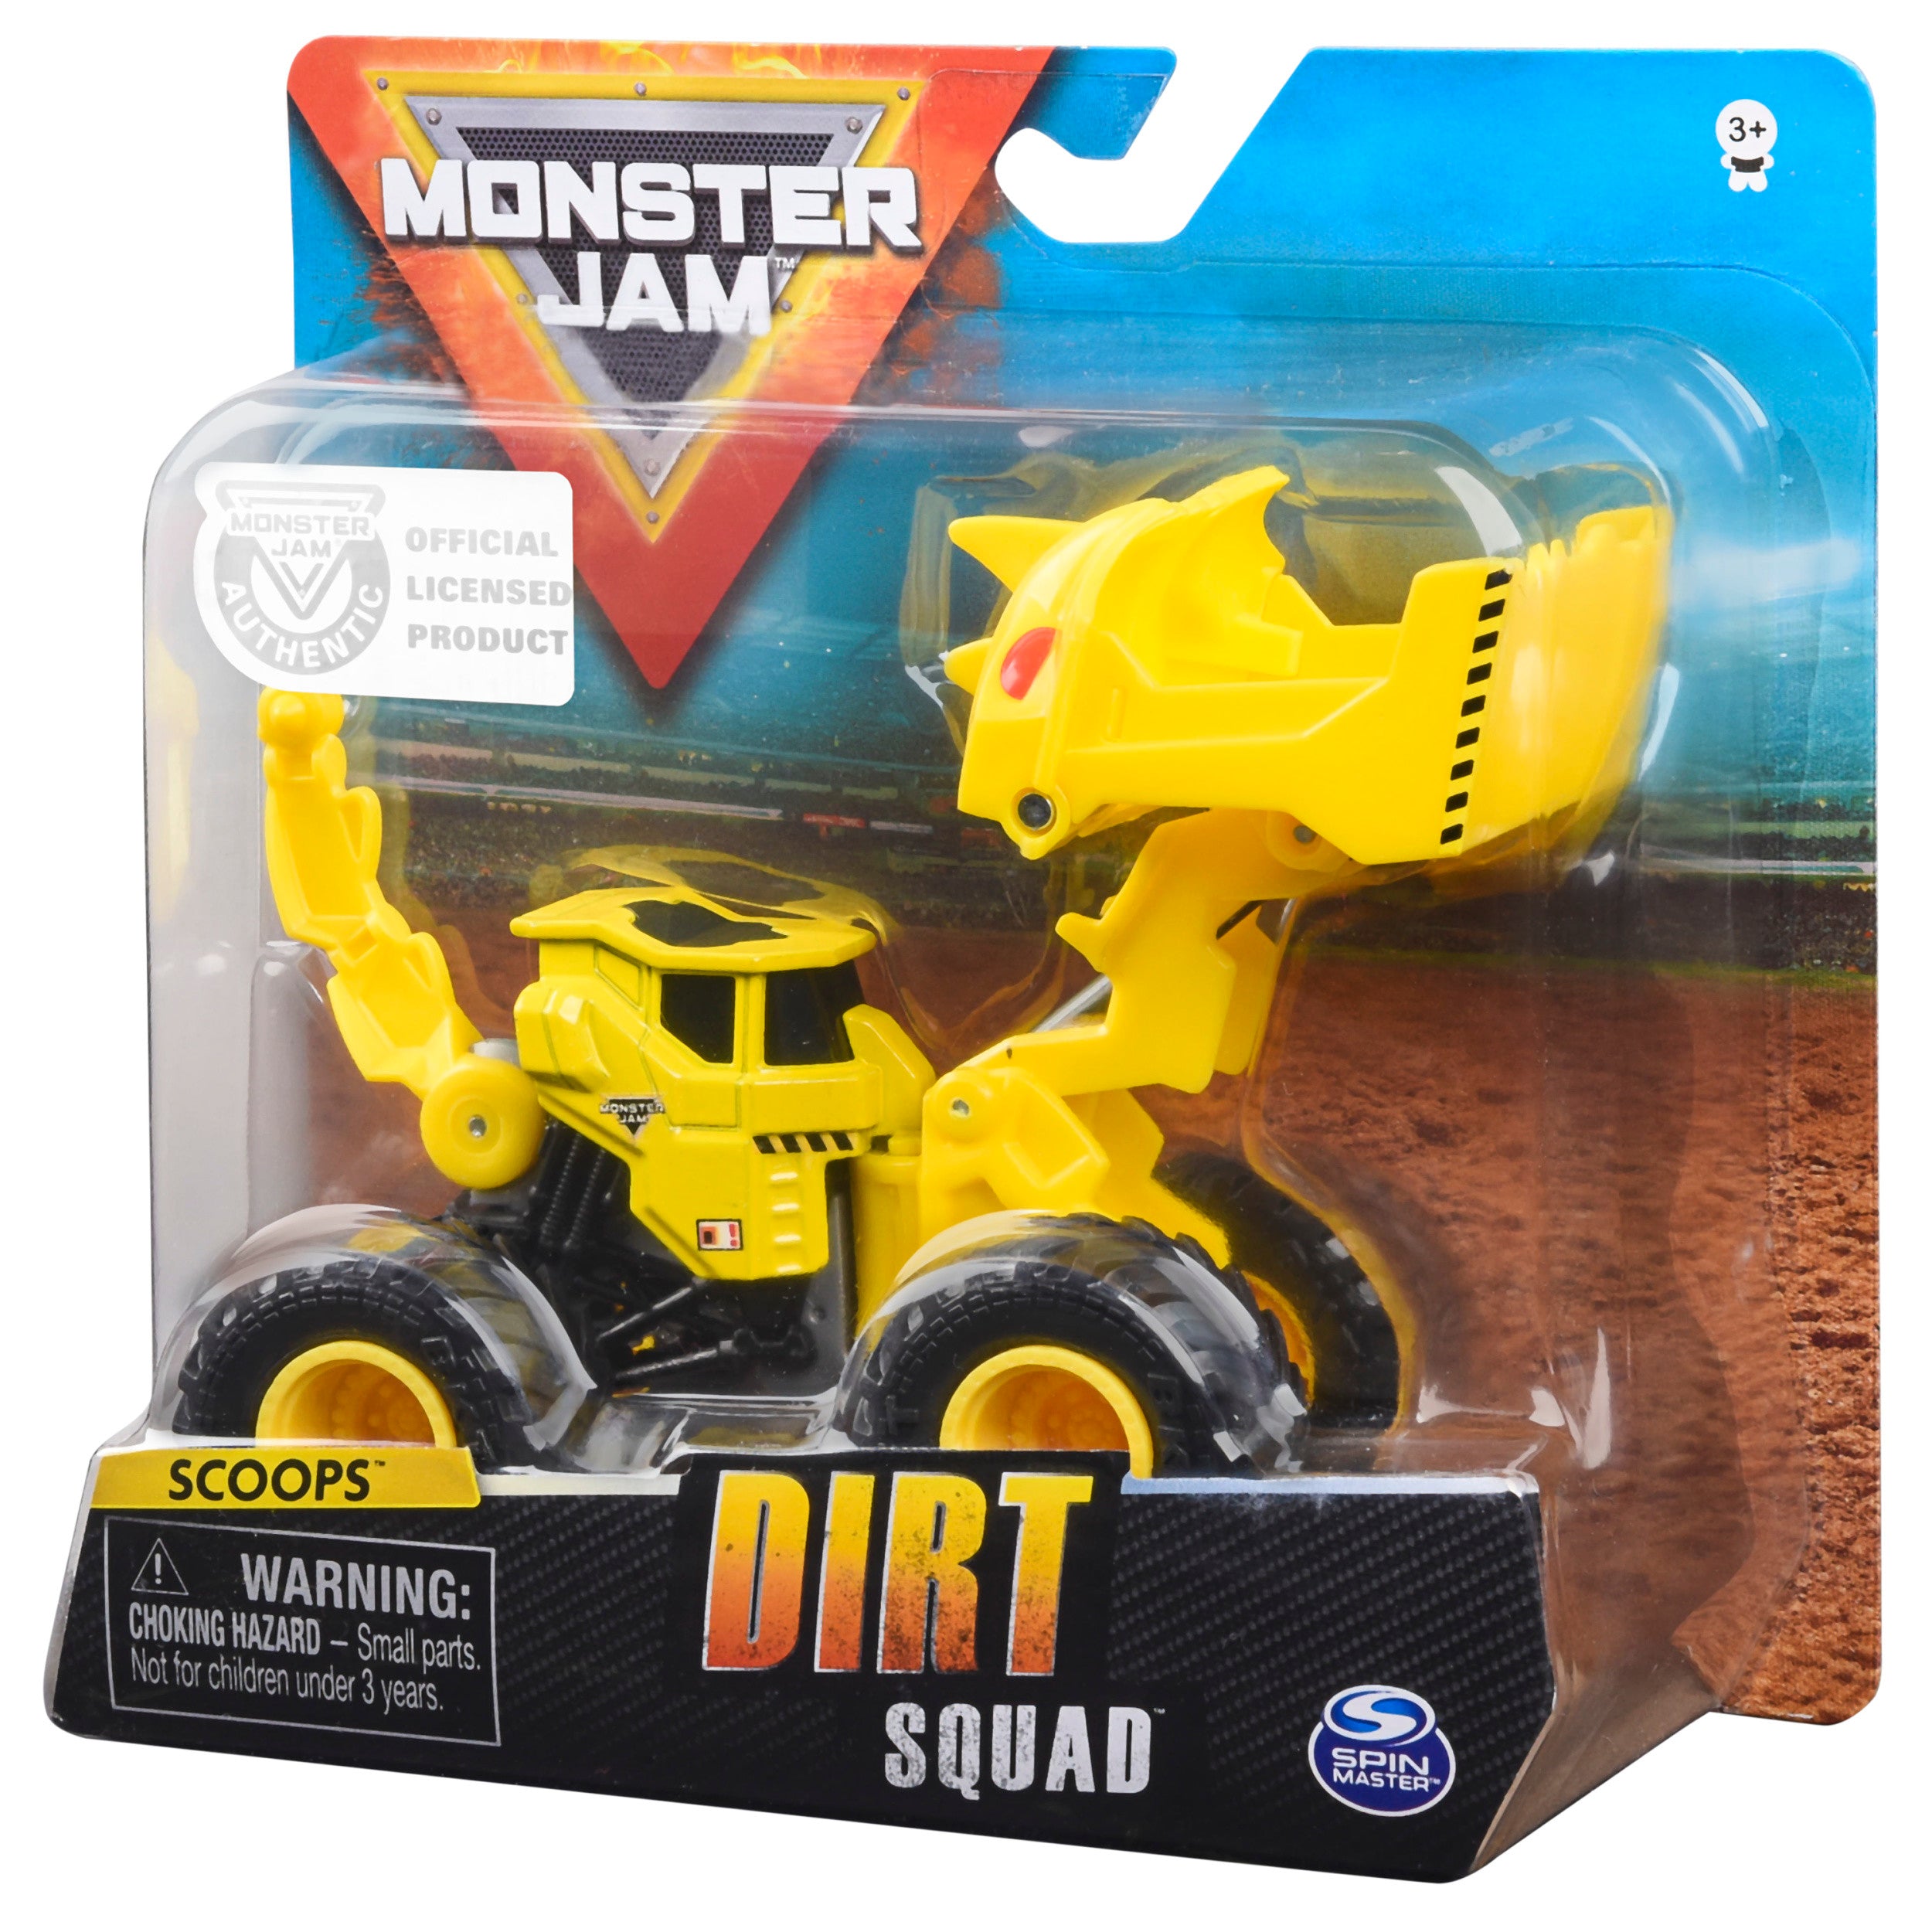 Monster Jam 1:64 Stunt Dirt Squad